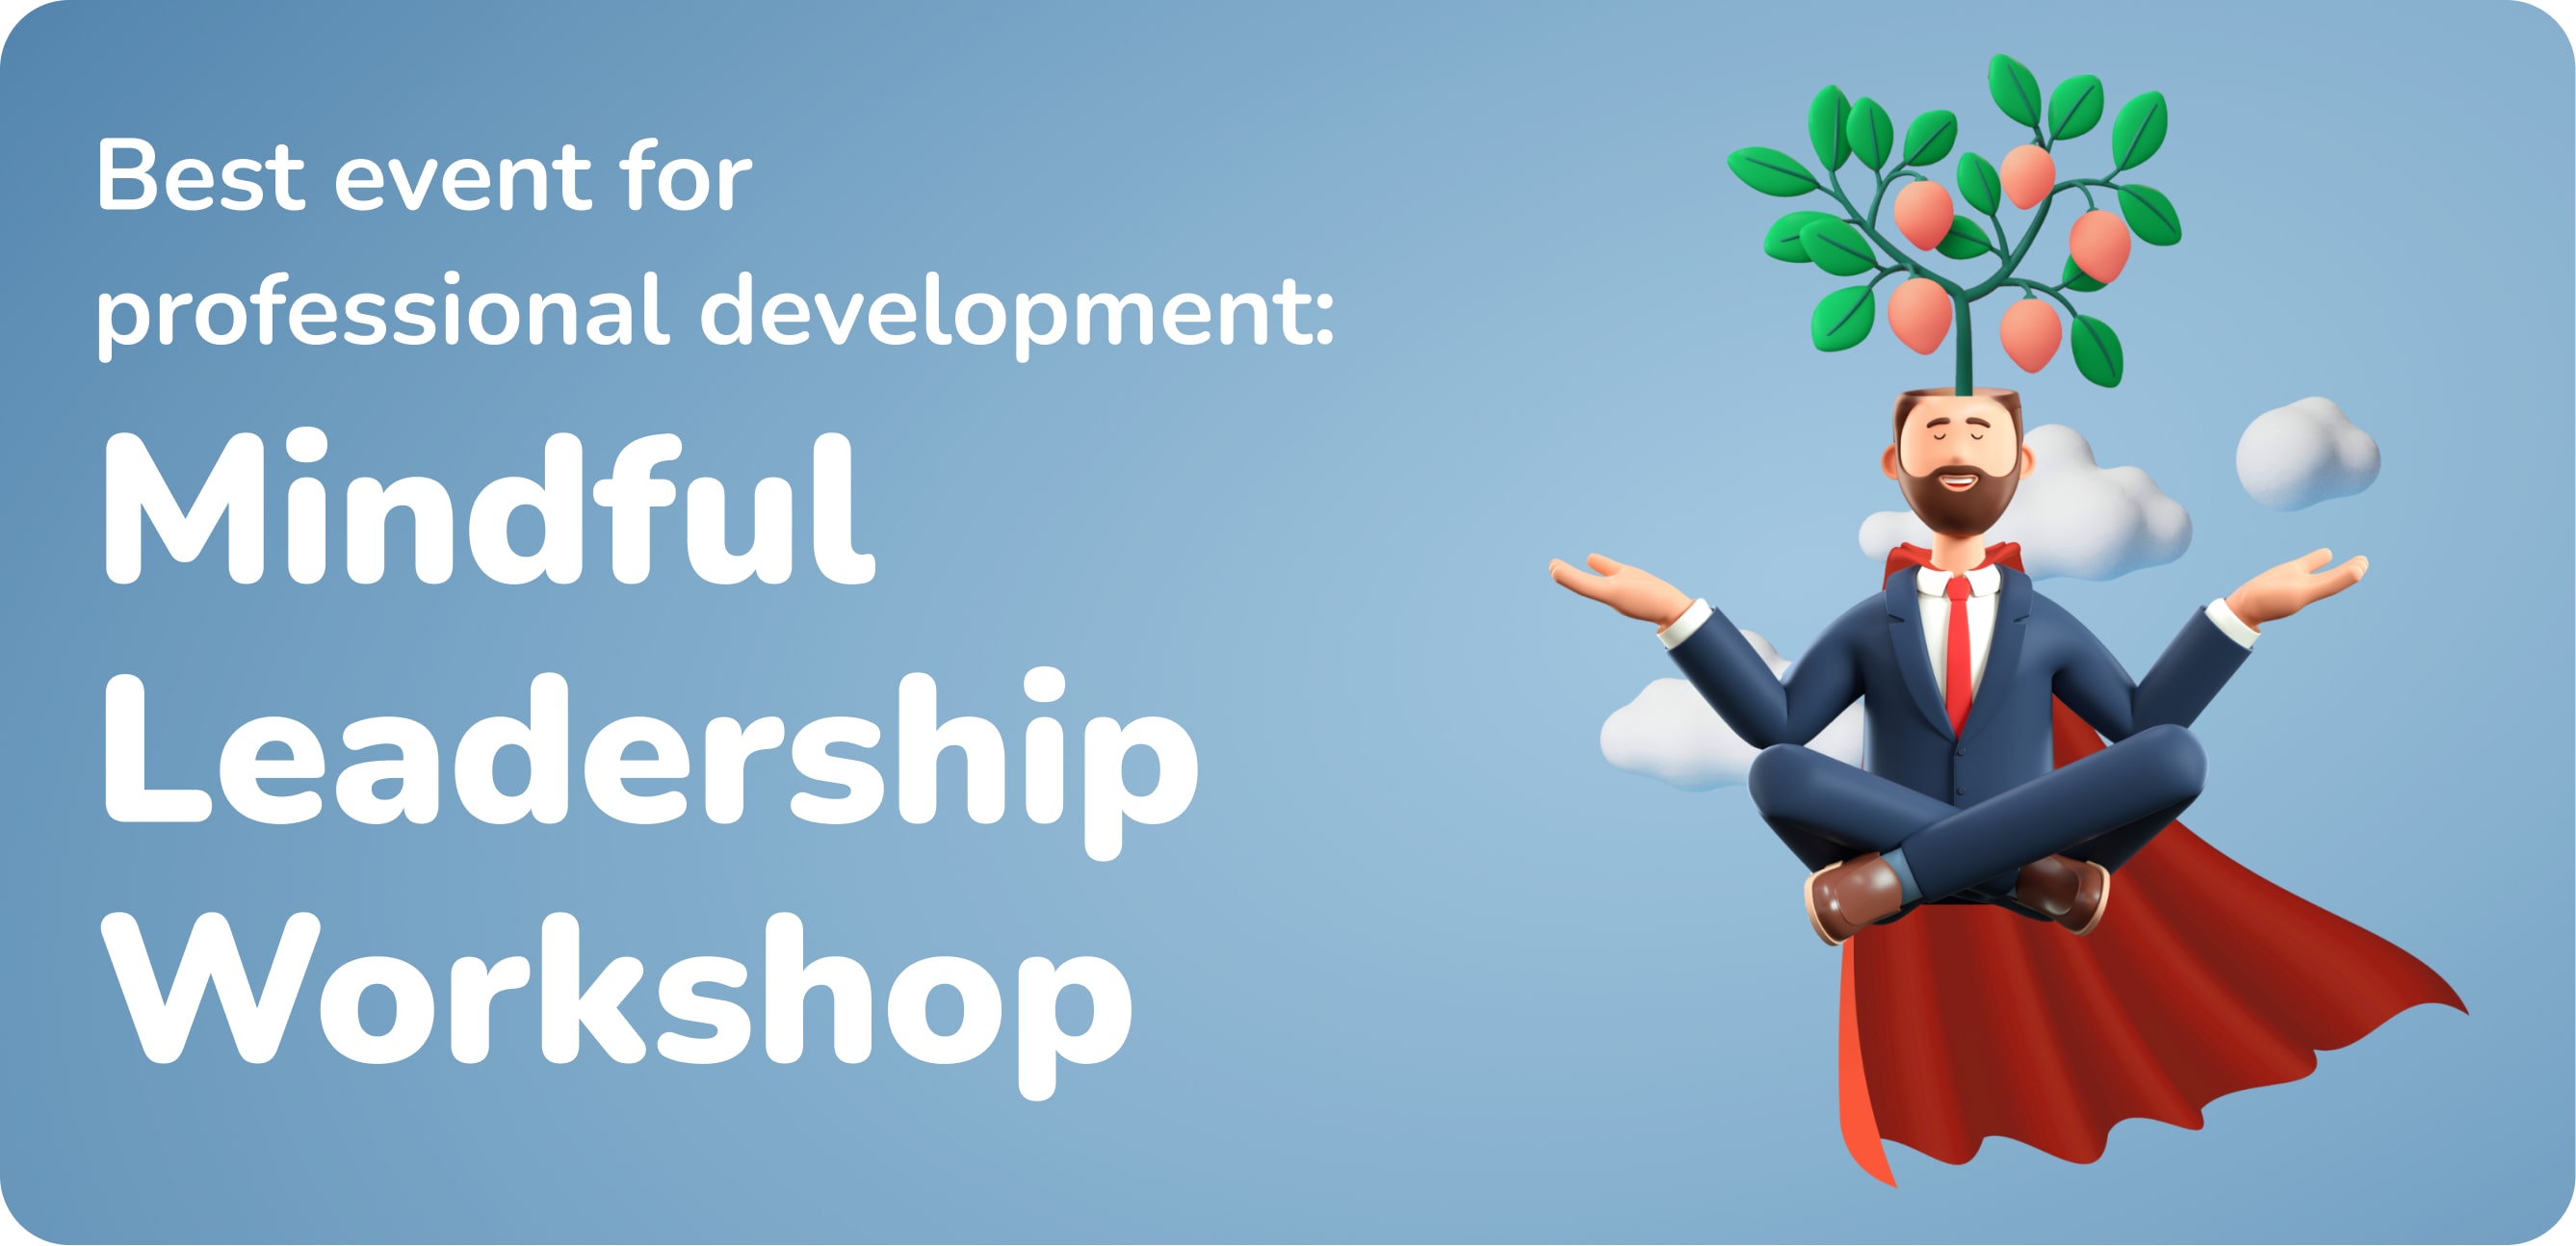 Best event for professional development: Mindful Leadership Workshop